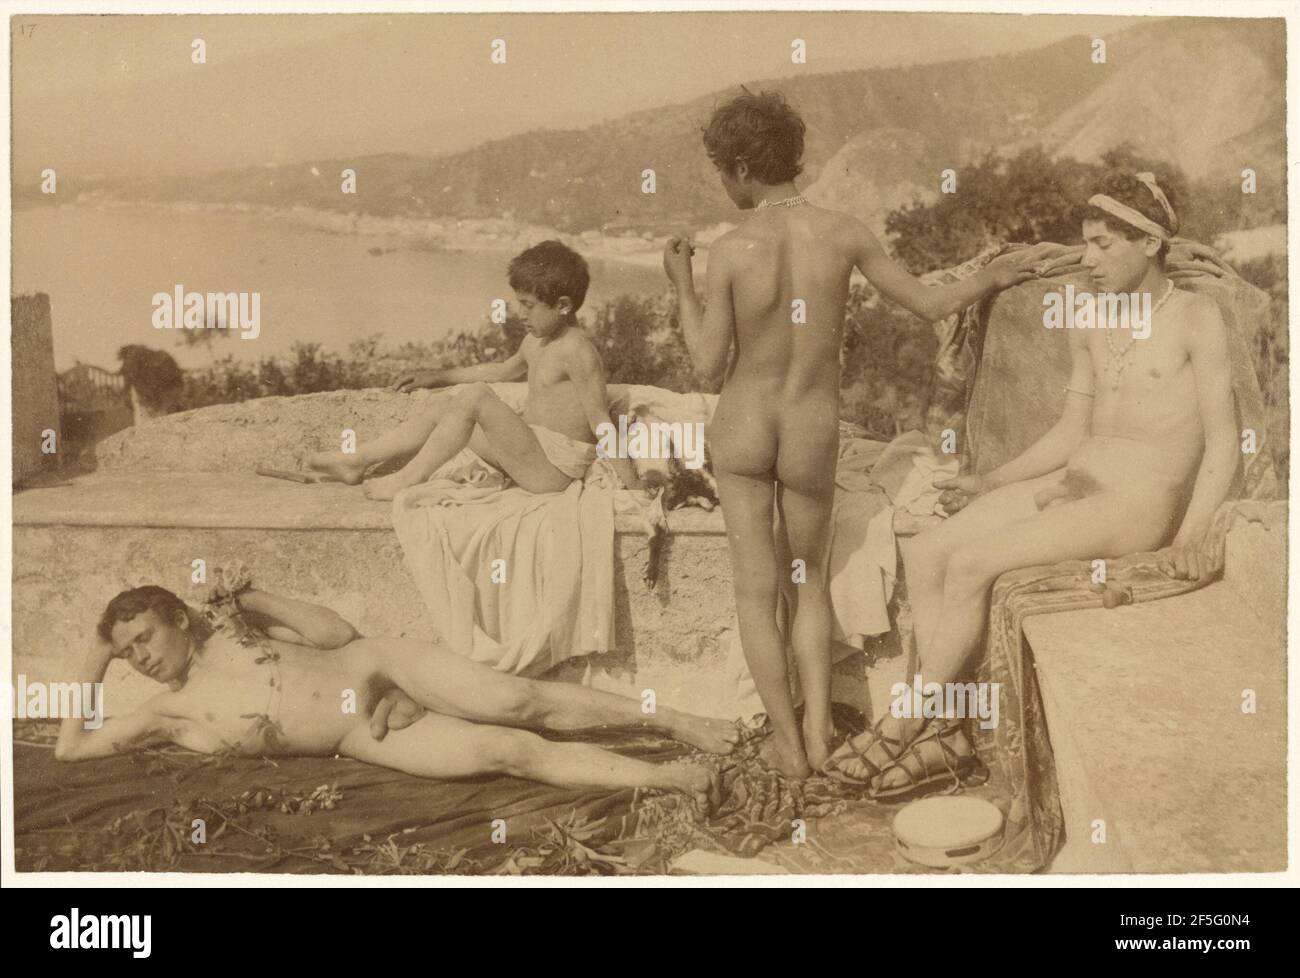 Sicilian Boys. Baron Wilhelm von Gloeden (German, 1856 - 1931) Stock Photo